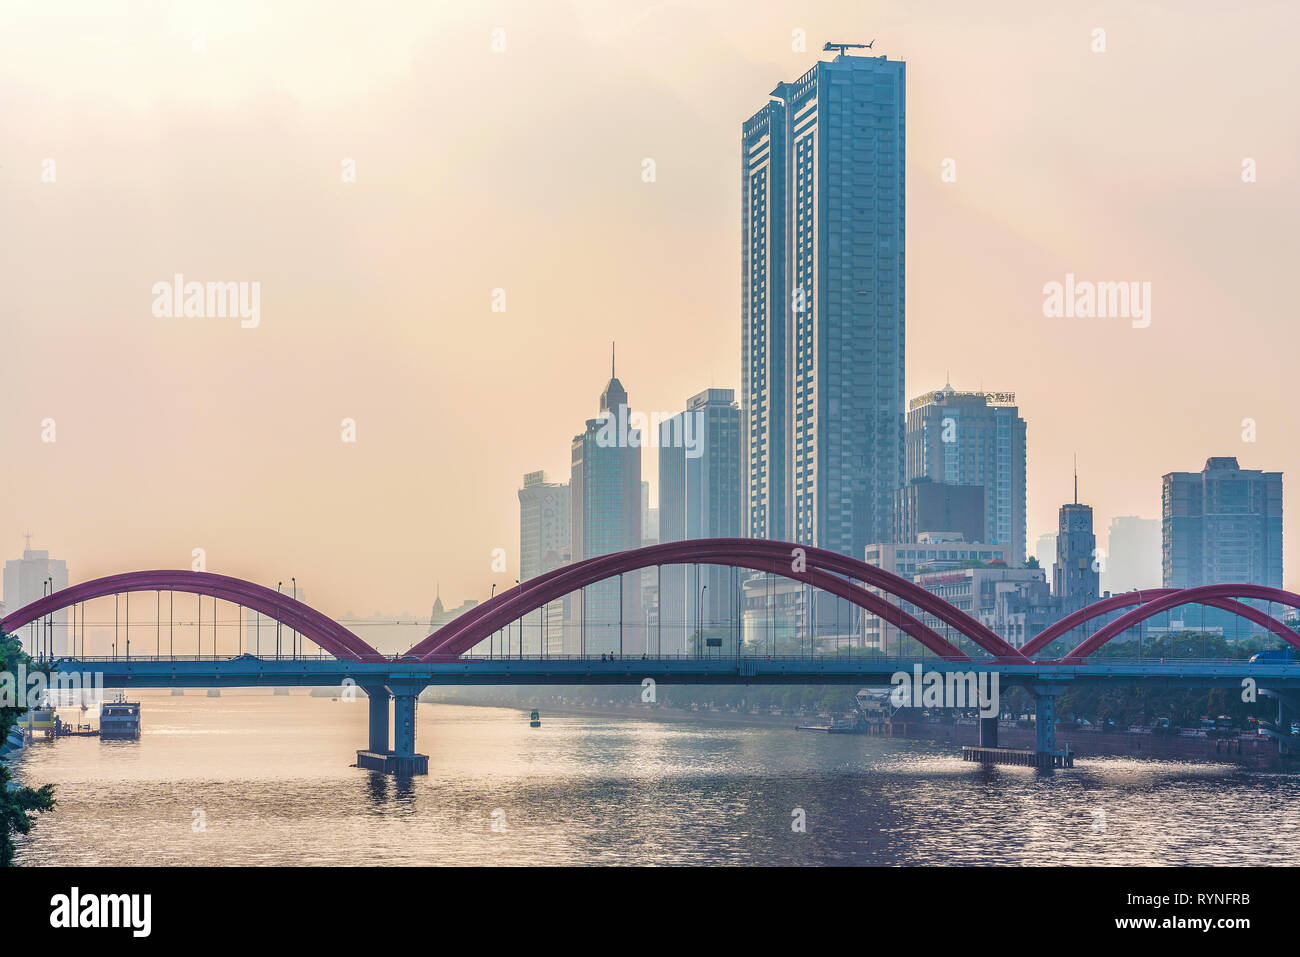 GUANGZHOU, Cina - 26 ottobre: Vista del ponte Jiefang e gli edifici della città sul fiume Pearl durante il tramonto su ottobre 26, 2018 in Guangzhou Foto Stock